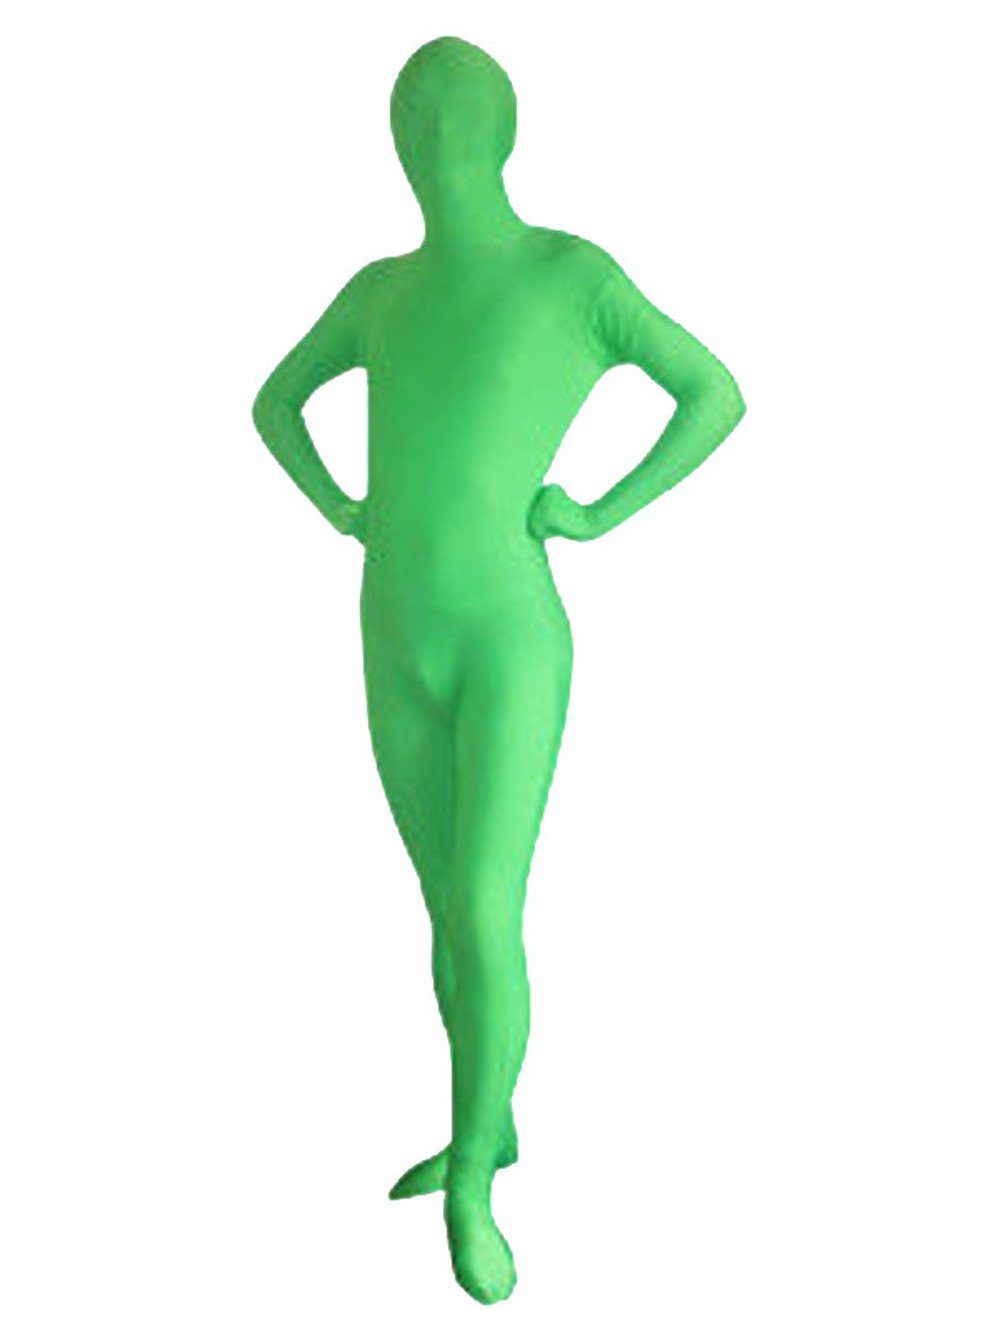 BRESSER Fotohintergrund Chromakey-grüner Ganzkörperanzug XL